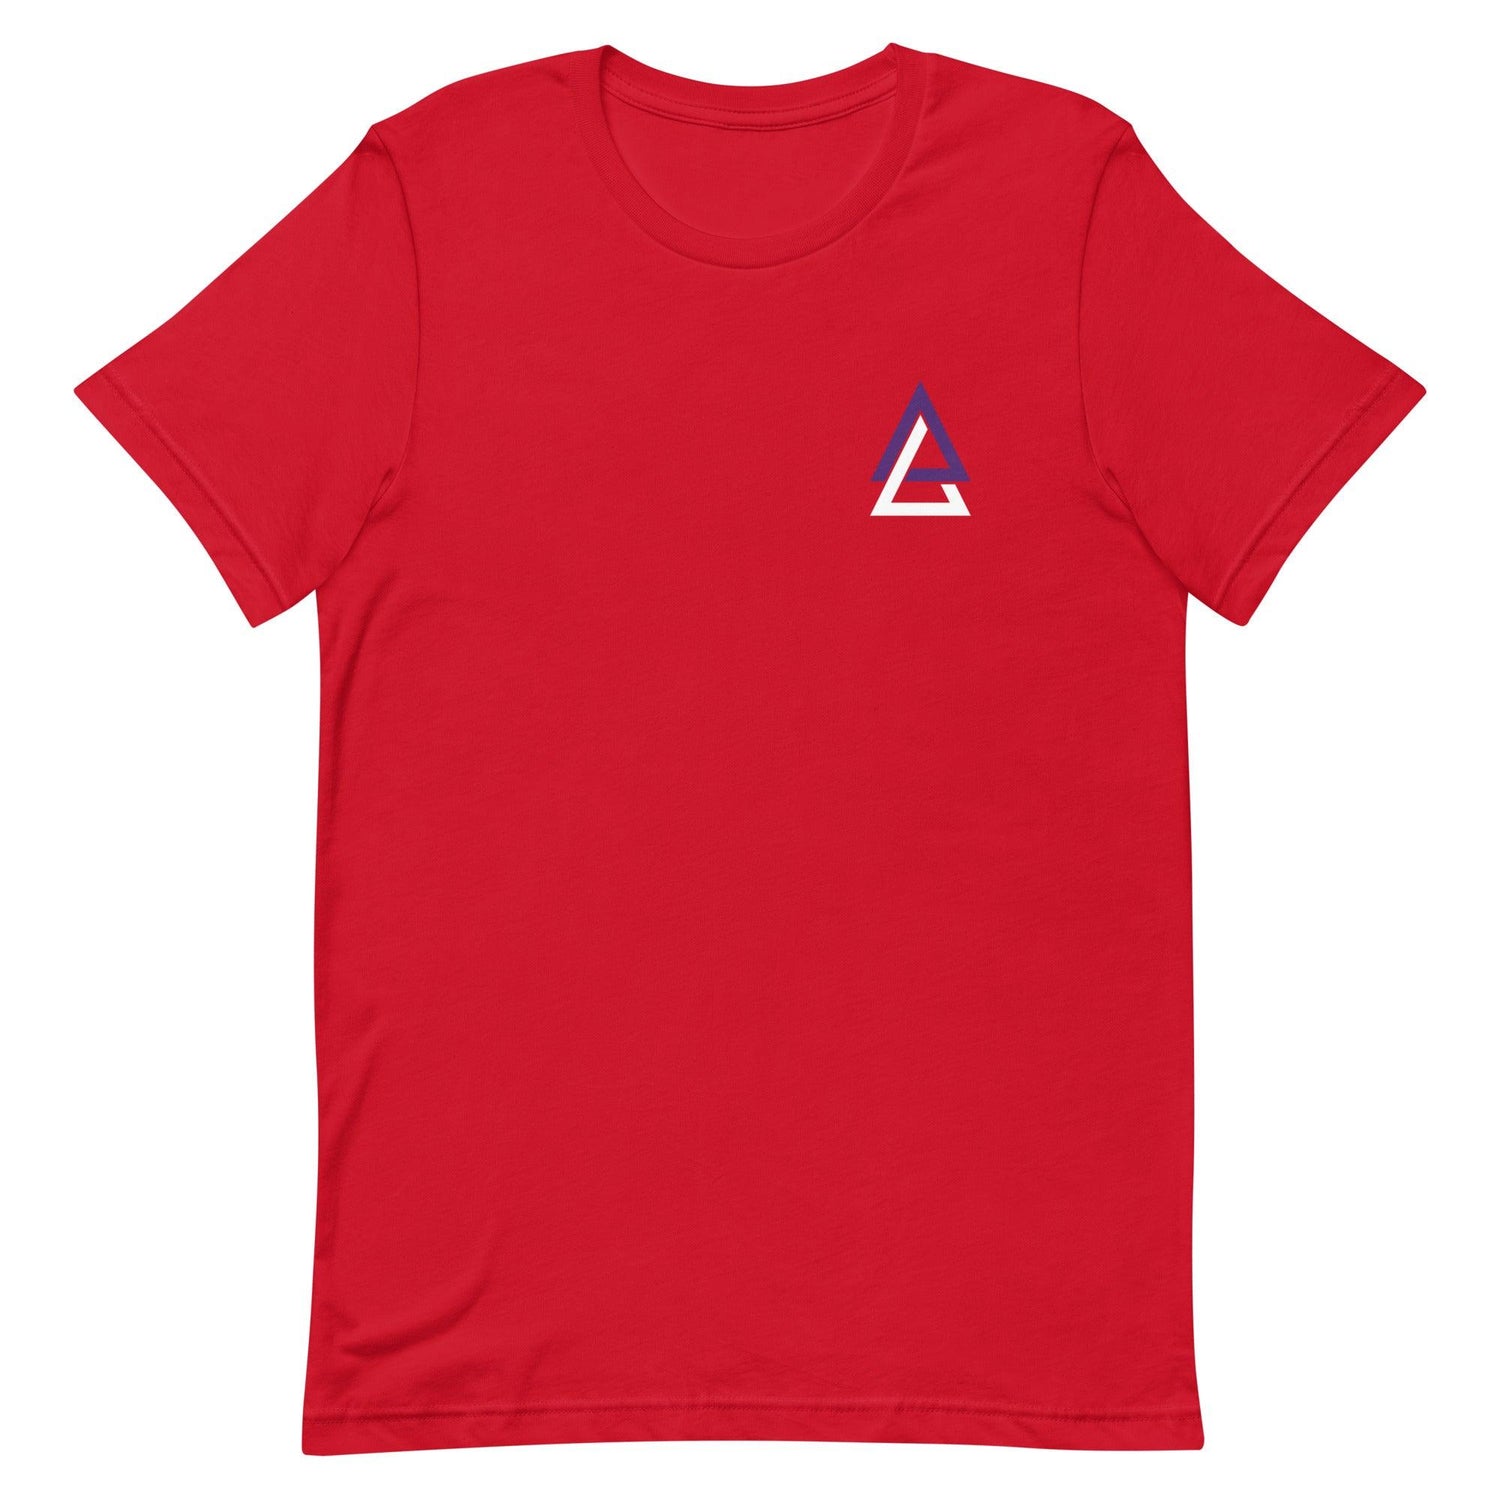 Ahjany Lee "Essential" t-shirt - Fan Arch